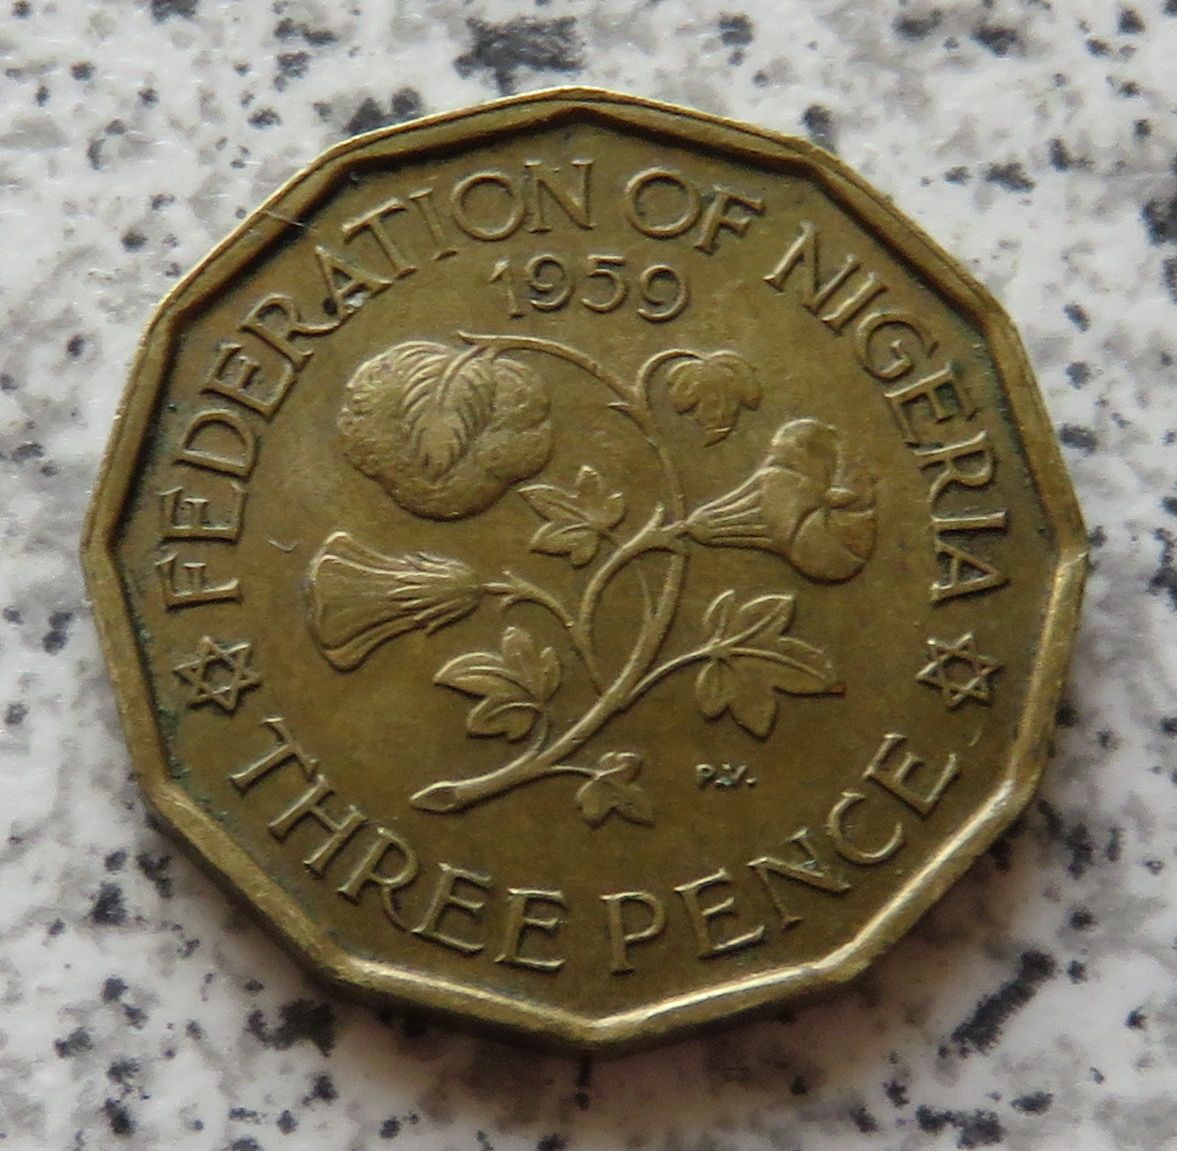  Nigeria 3 Pence 1959   